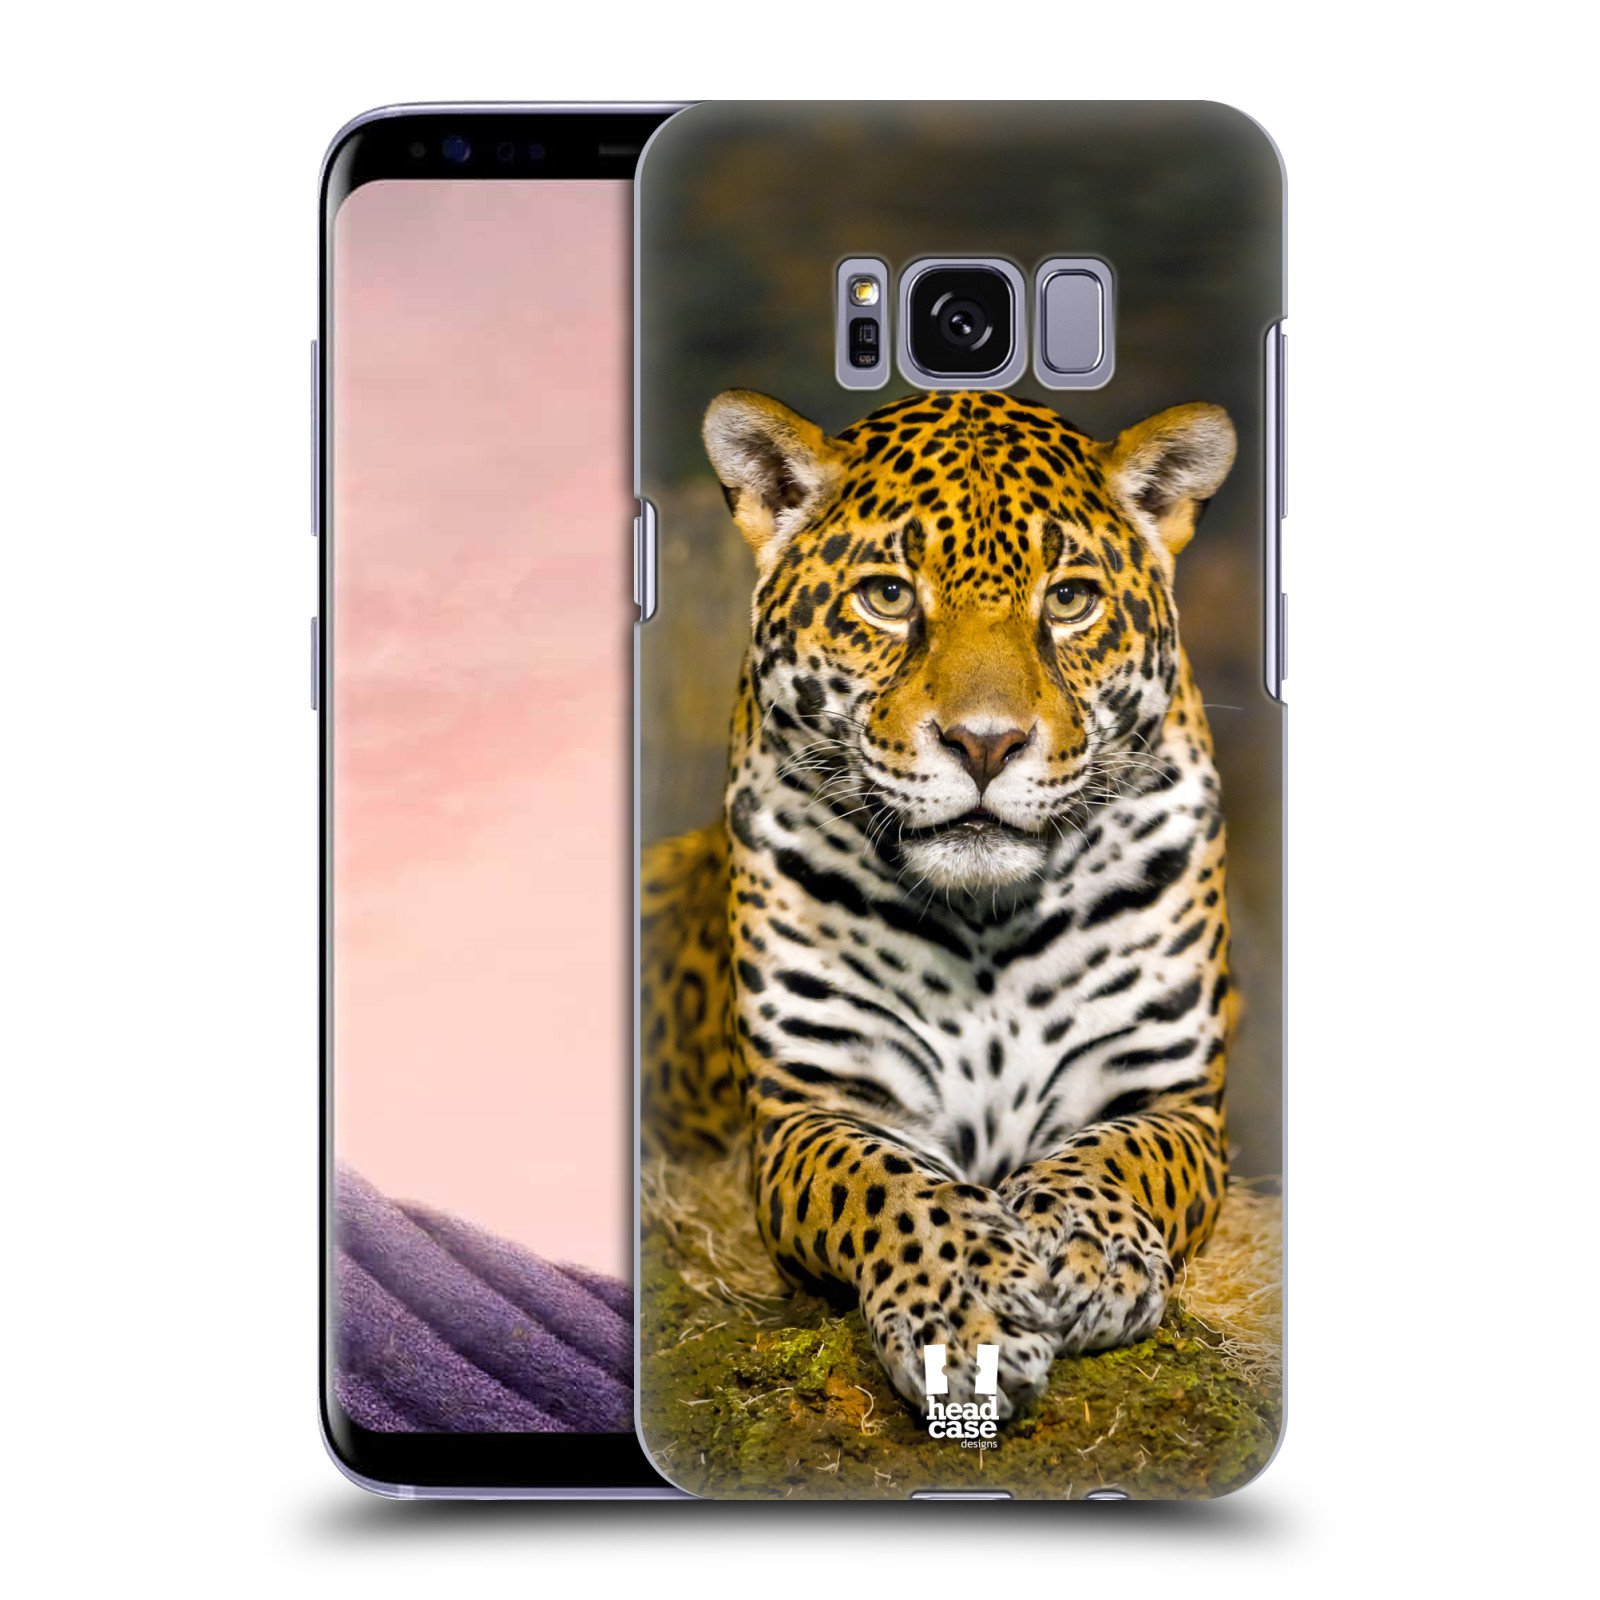 HEAD CASE plastový obal na mobil Samsung Galaxy S8 vzor slavná zvířata foto jaguár